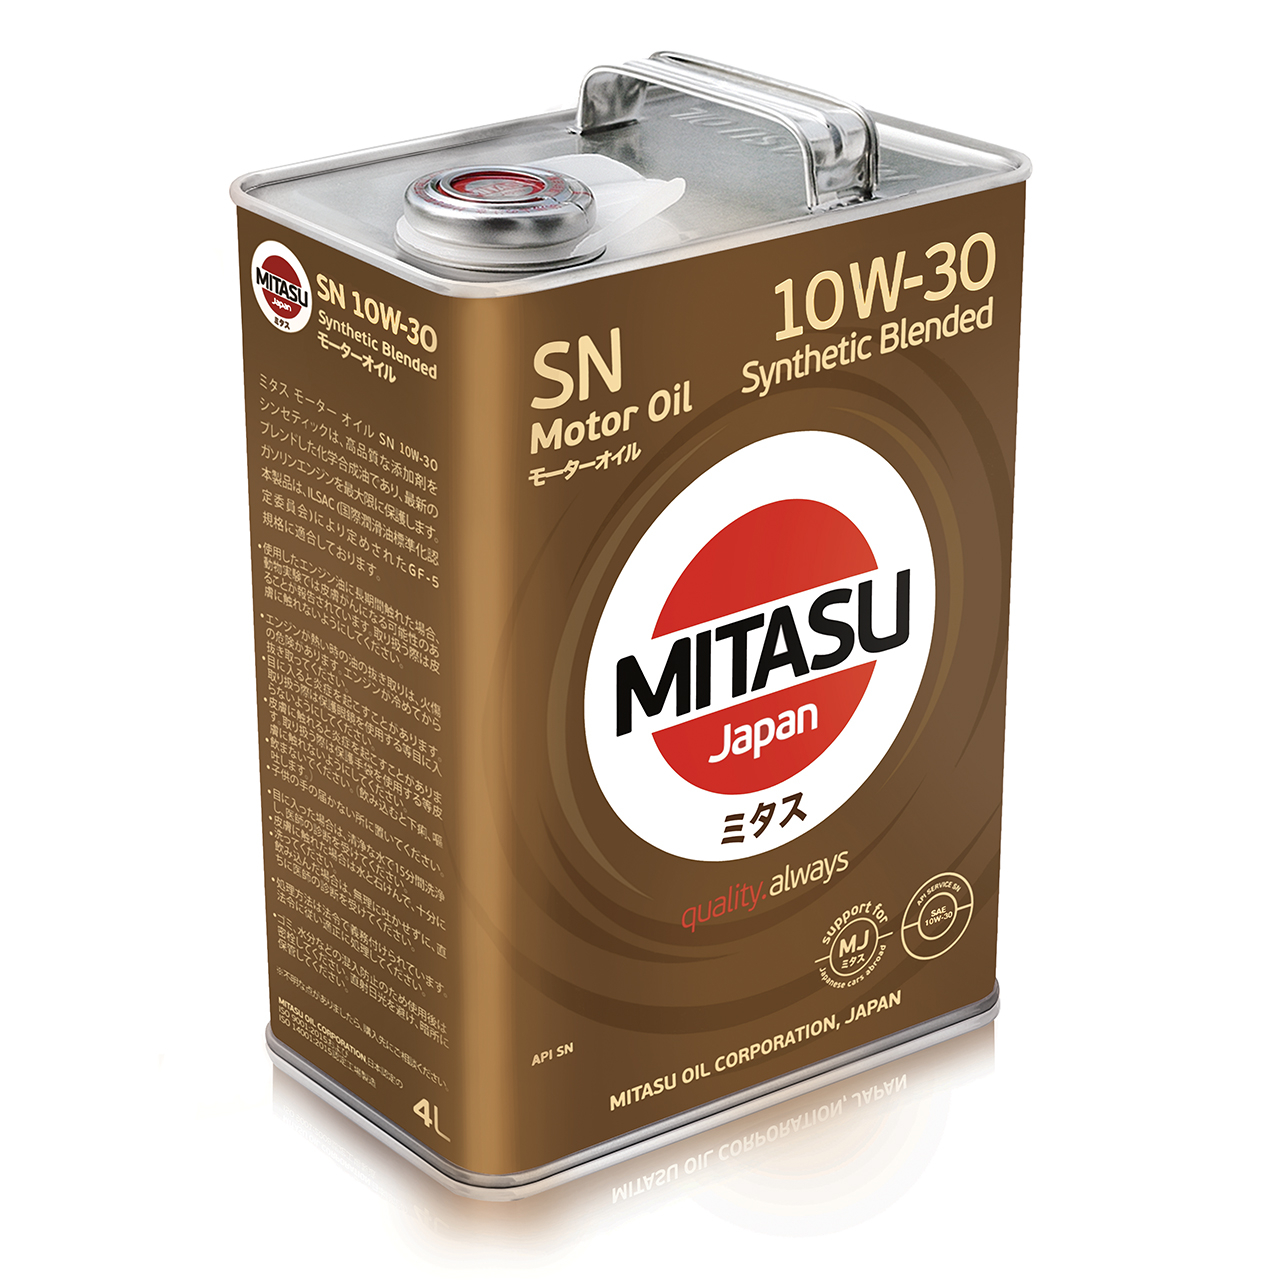 Купить запчасть MITASU - MJ1214 Масло моторное MITASU SN 10w30 4л п/синтетическое для бензиновых двигателей MJ121 (1/6) Япония